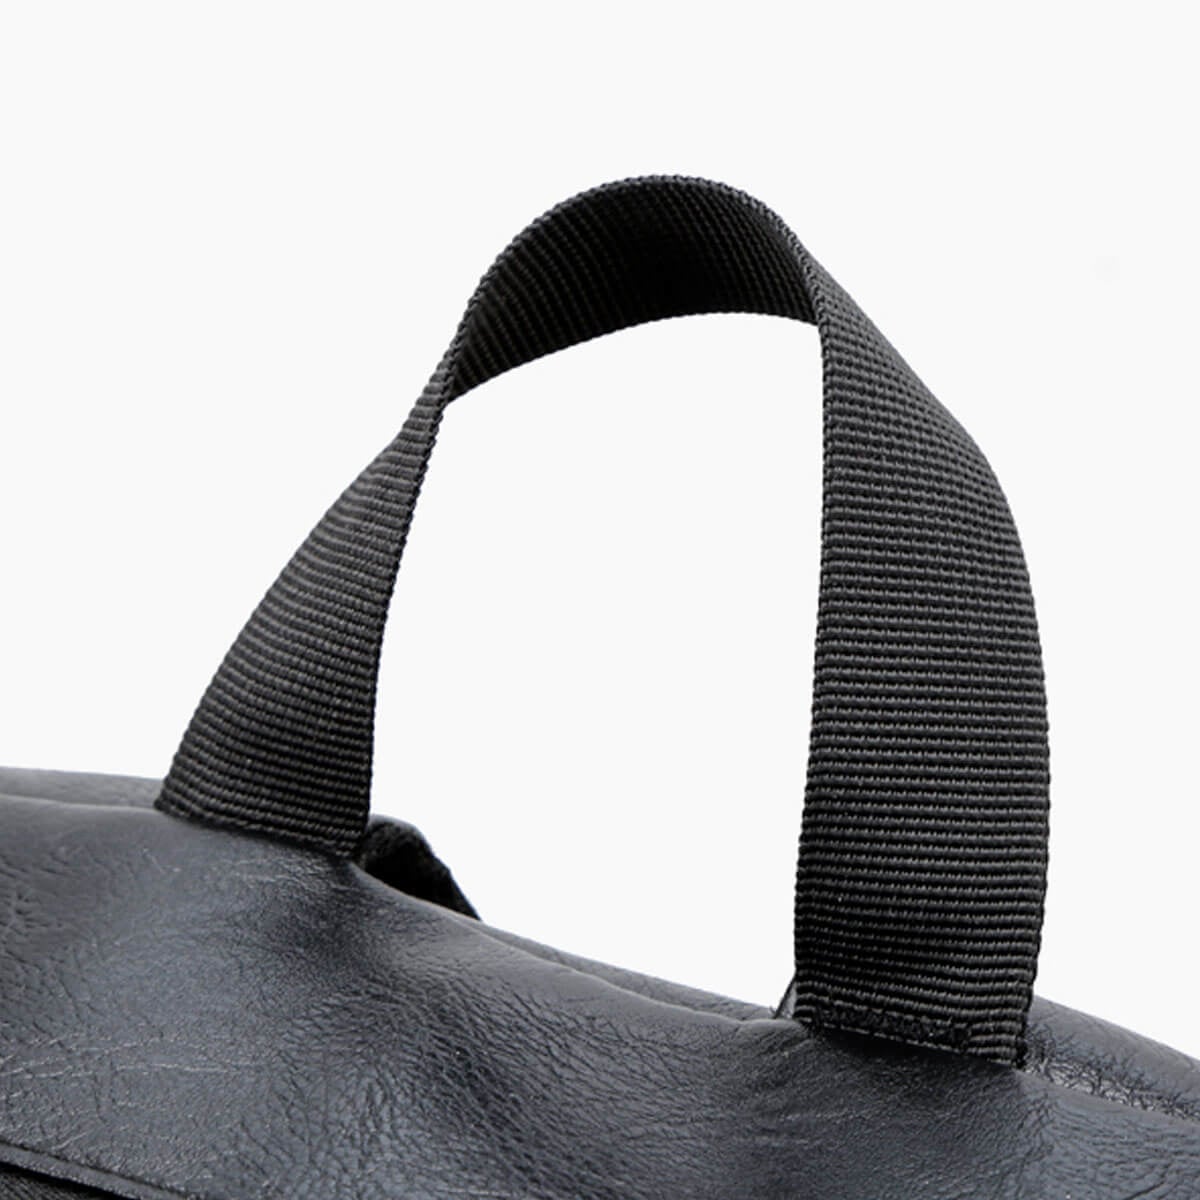 Leather Black Laptop Waterproof Usb Charging Backpack